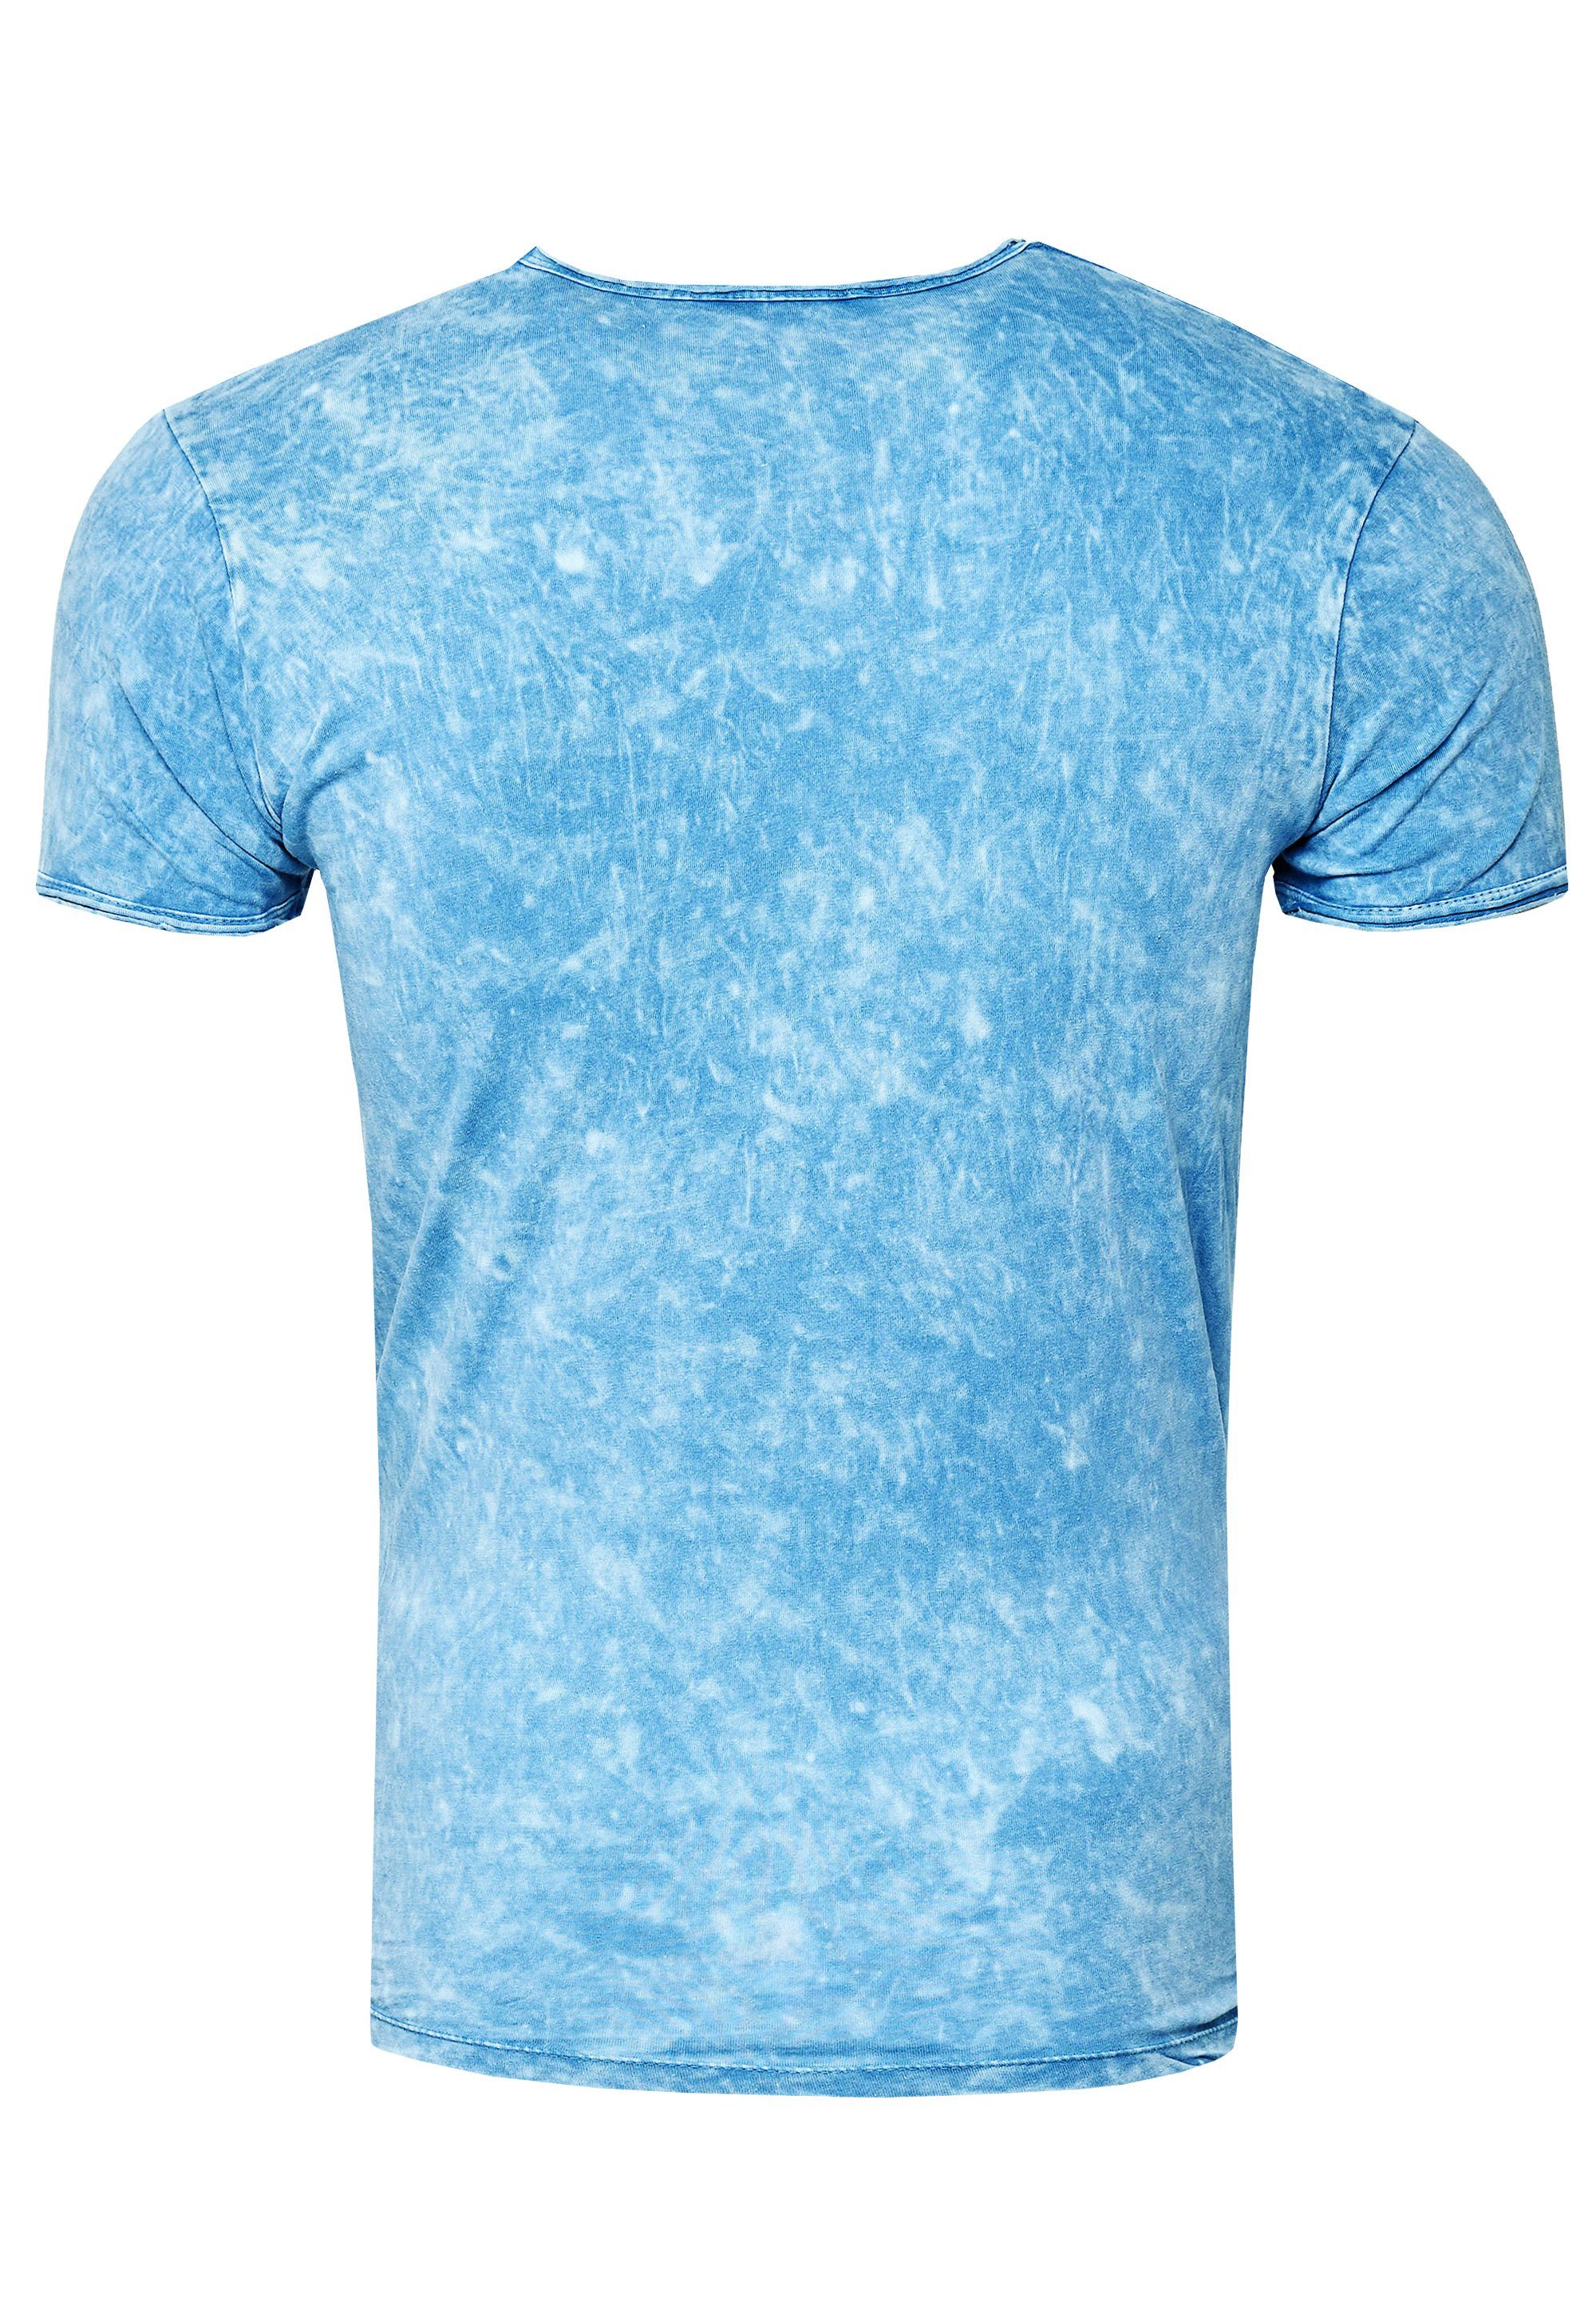 Rusty Neal T-Shirt hellblau Print mit eindrucksvollem